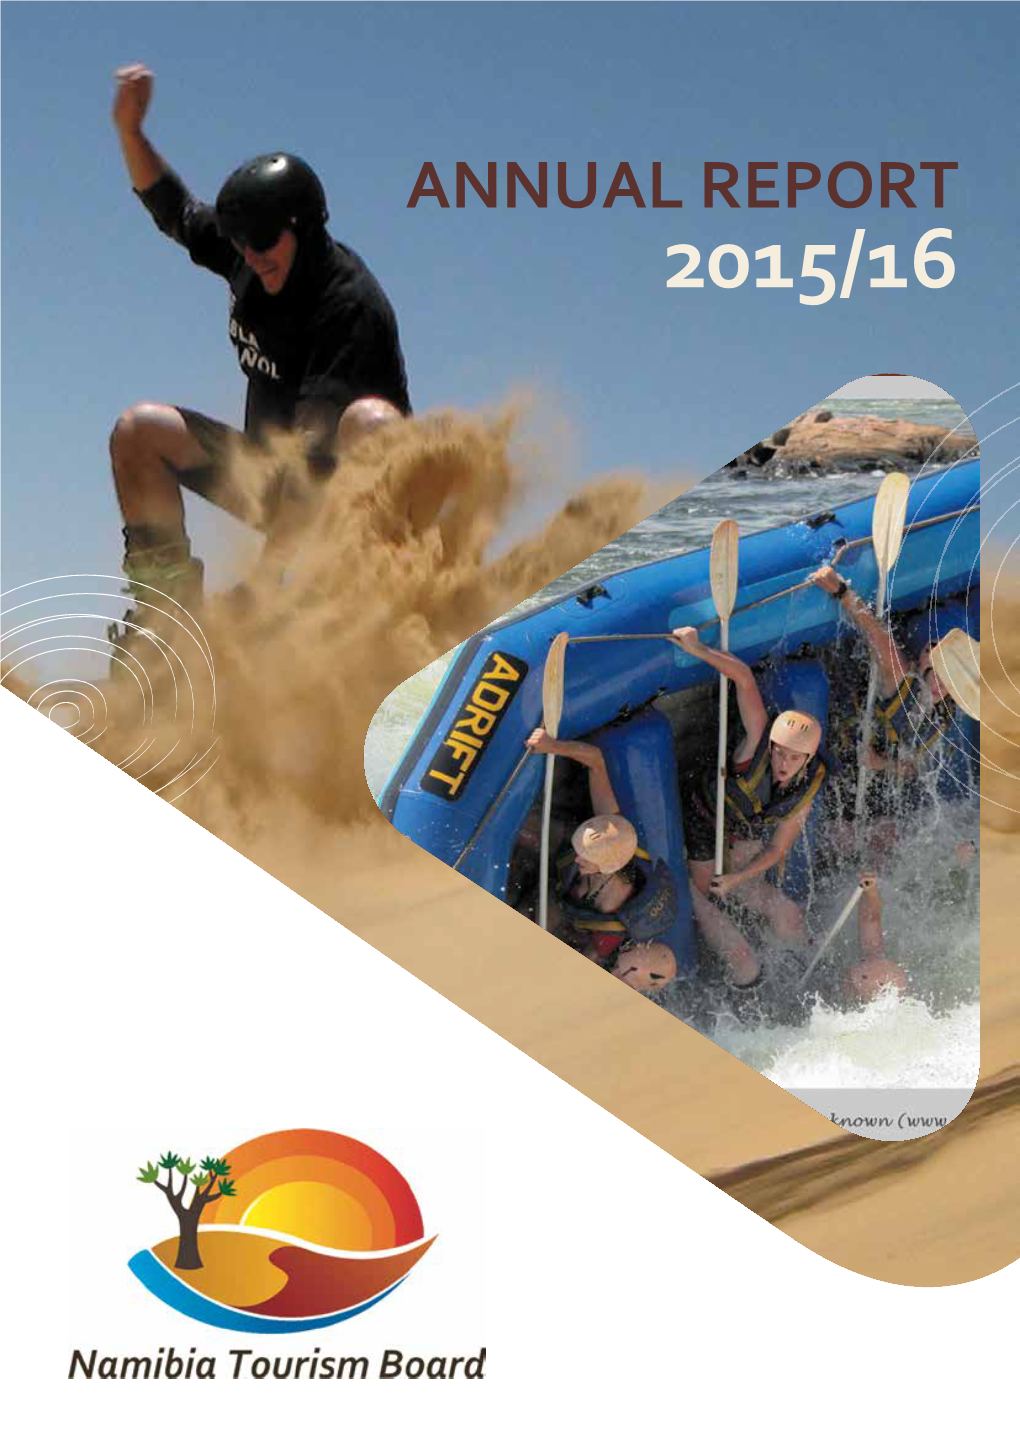 Annual Report 2015/16 Annual Report 2015/16